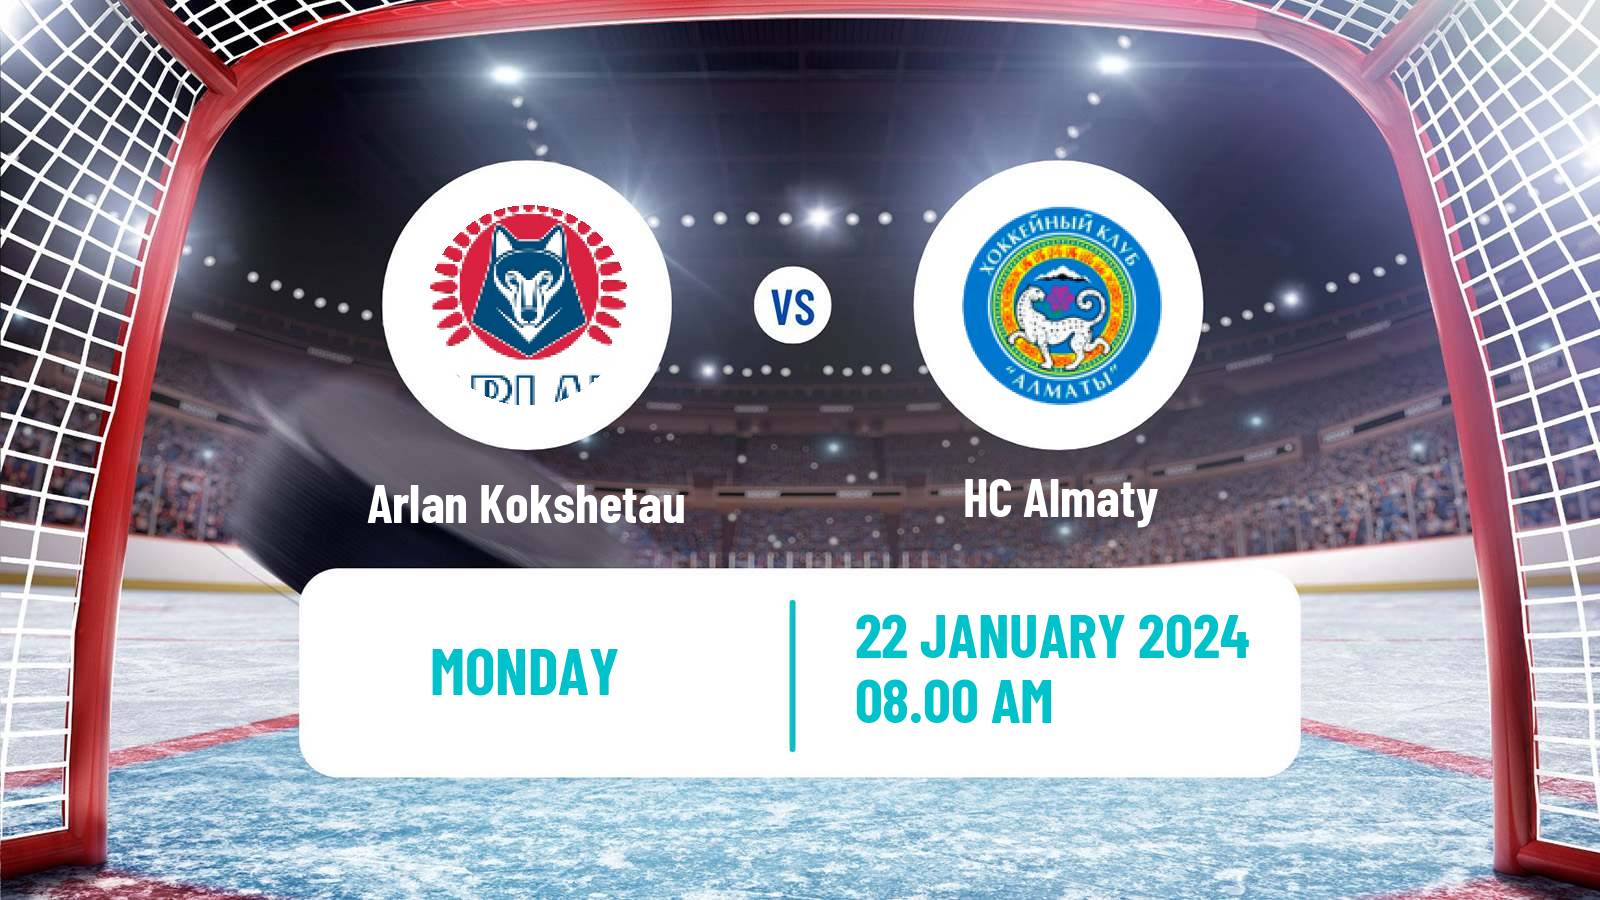 Hockey Kazakh Ice Hockey Championship Arlan Kokshetau - Almaty